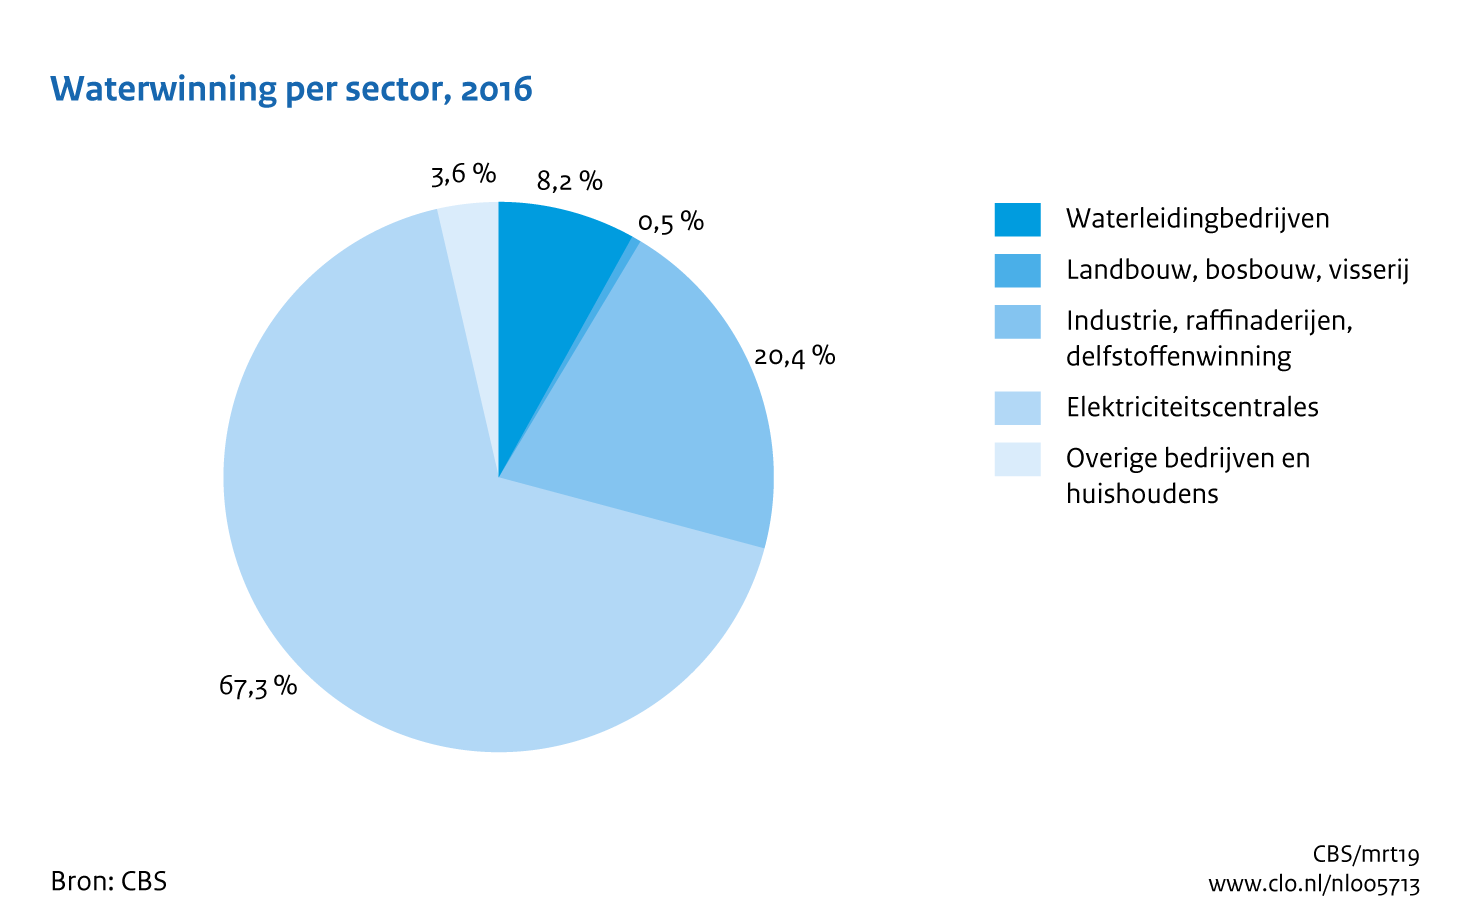 Figuur Waterwinning per sector 2016. In de rest van de tekst wordt deze figuur uitgebreider uitgelegd.